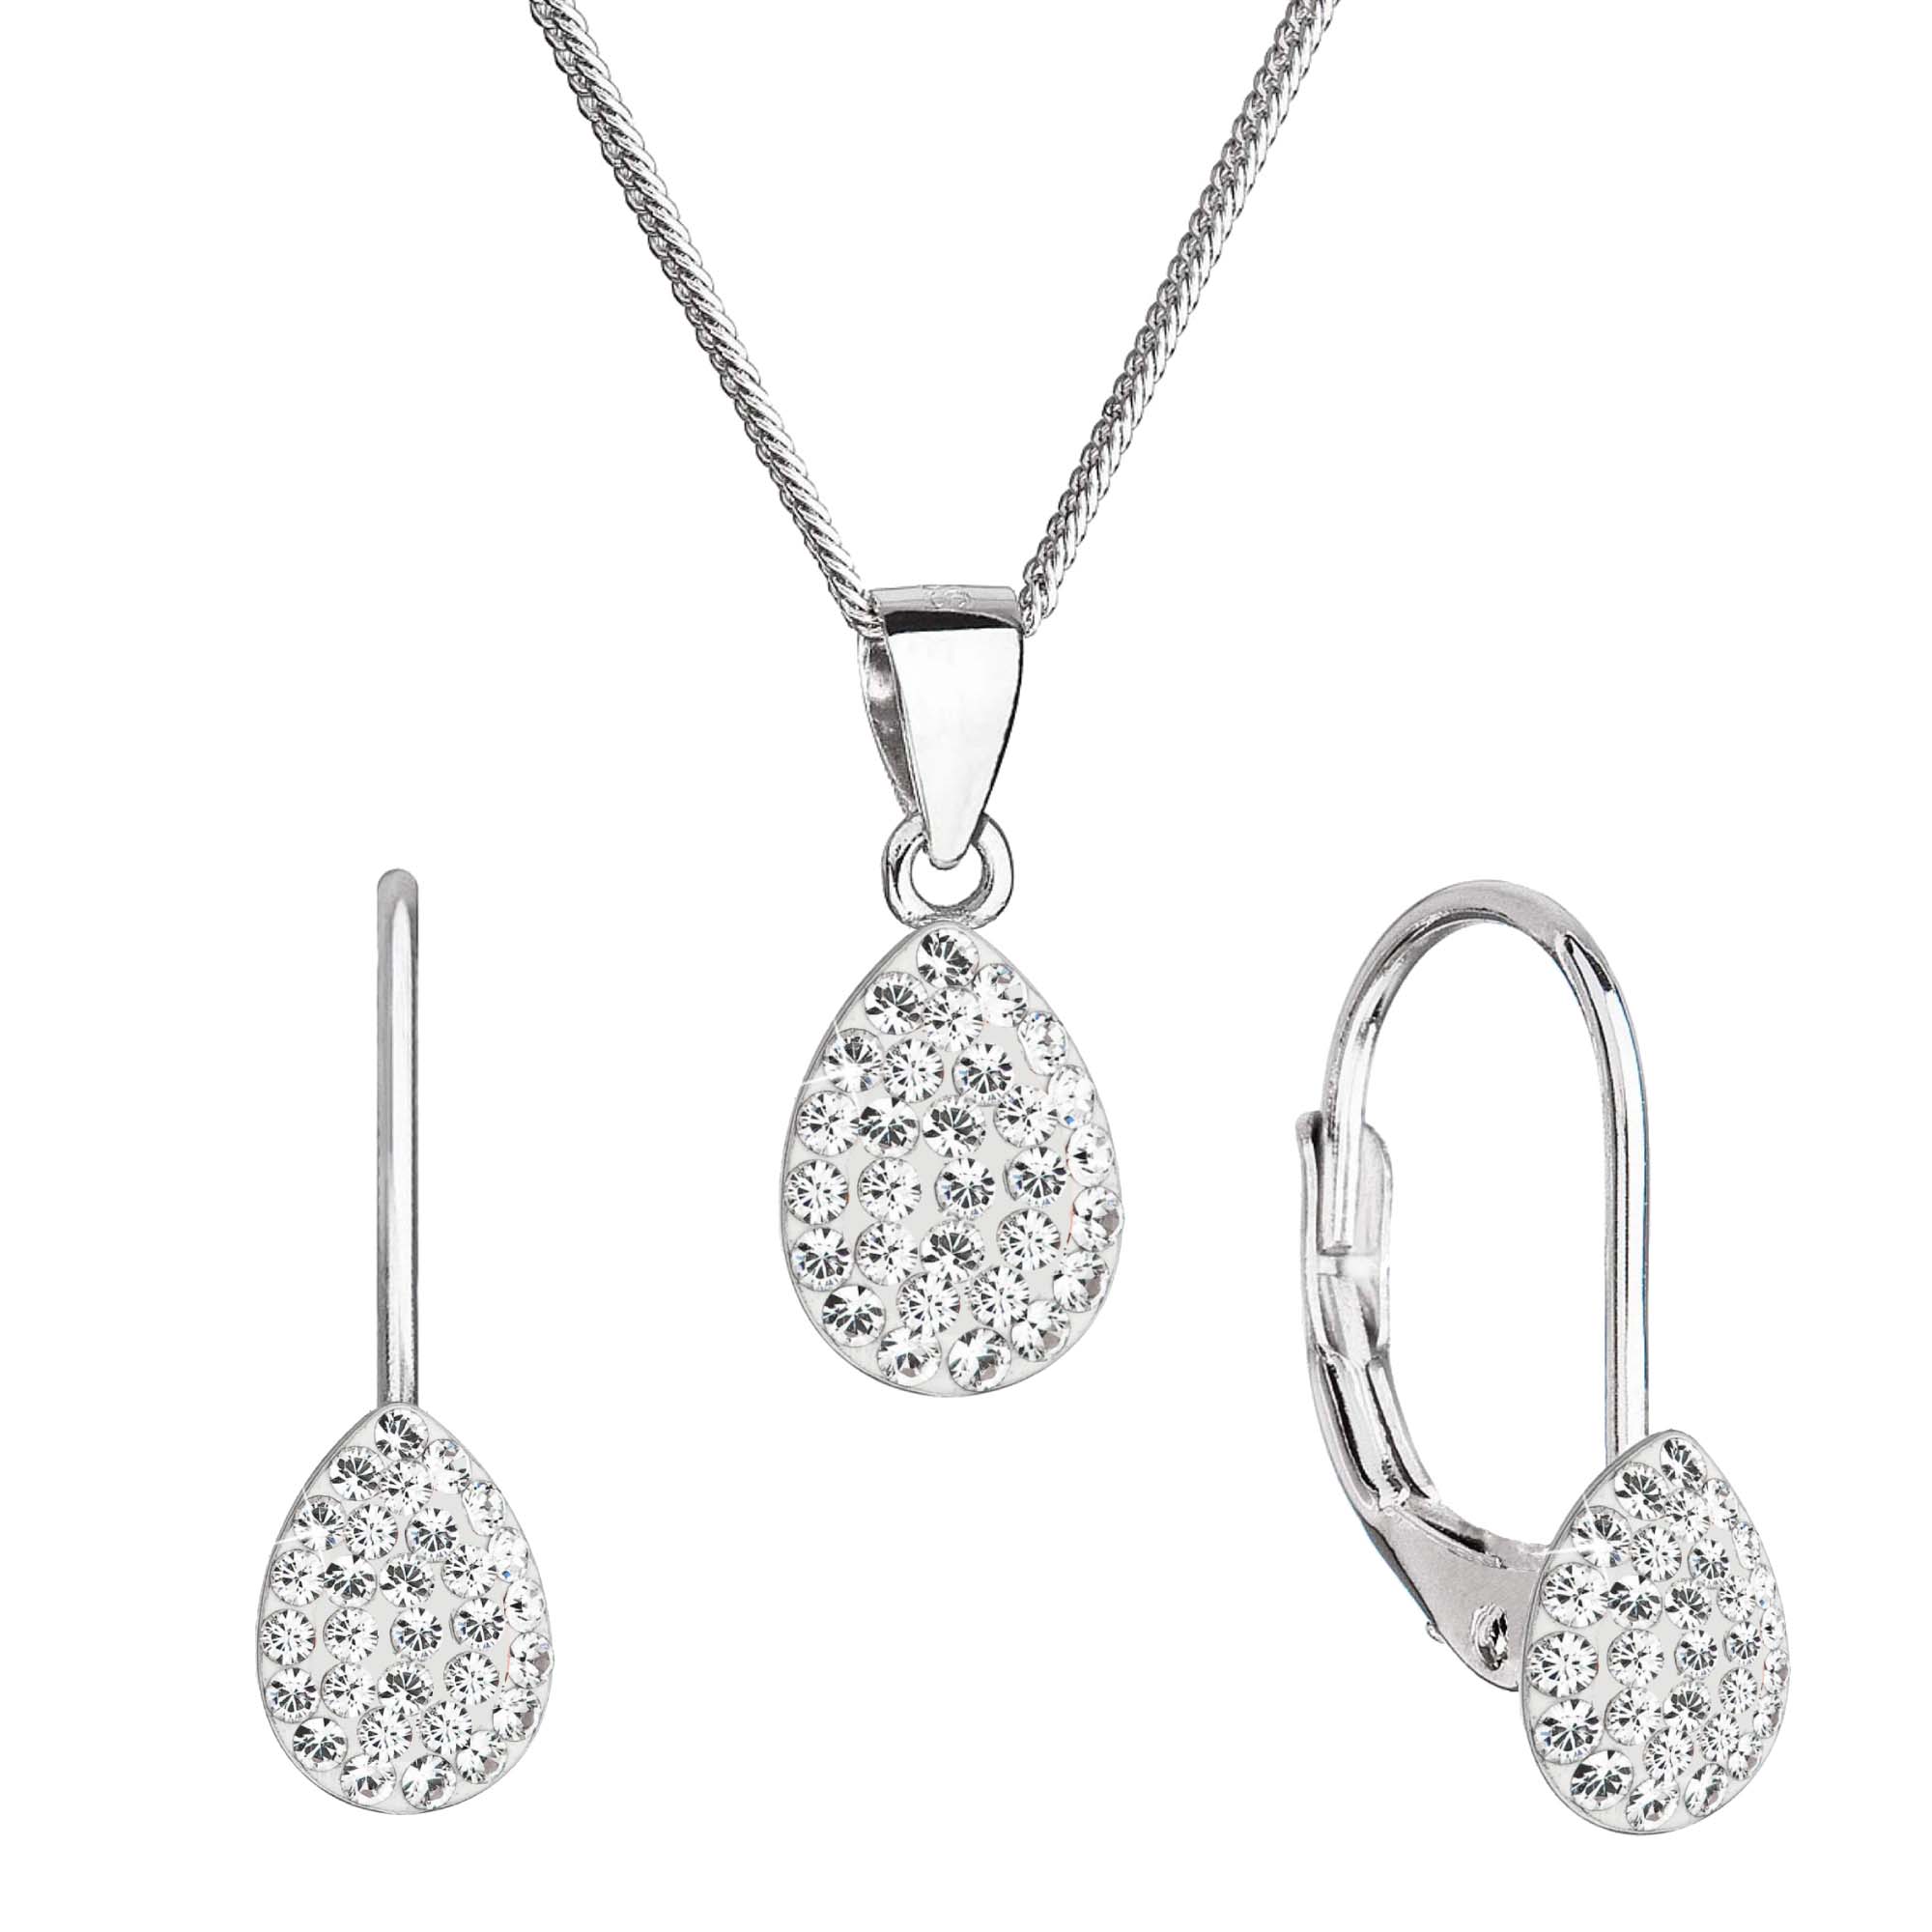 Evolution Group Sada šperků s krystaly Swarovski náušnice, řetízek a přívěsek bílý 79045.1 crystal